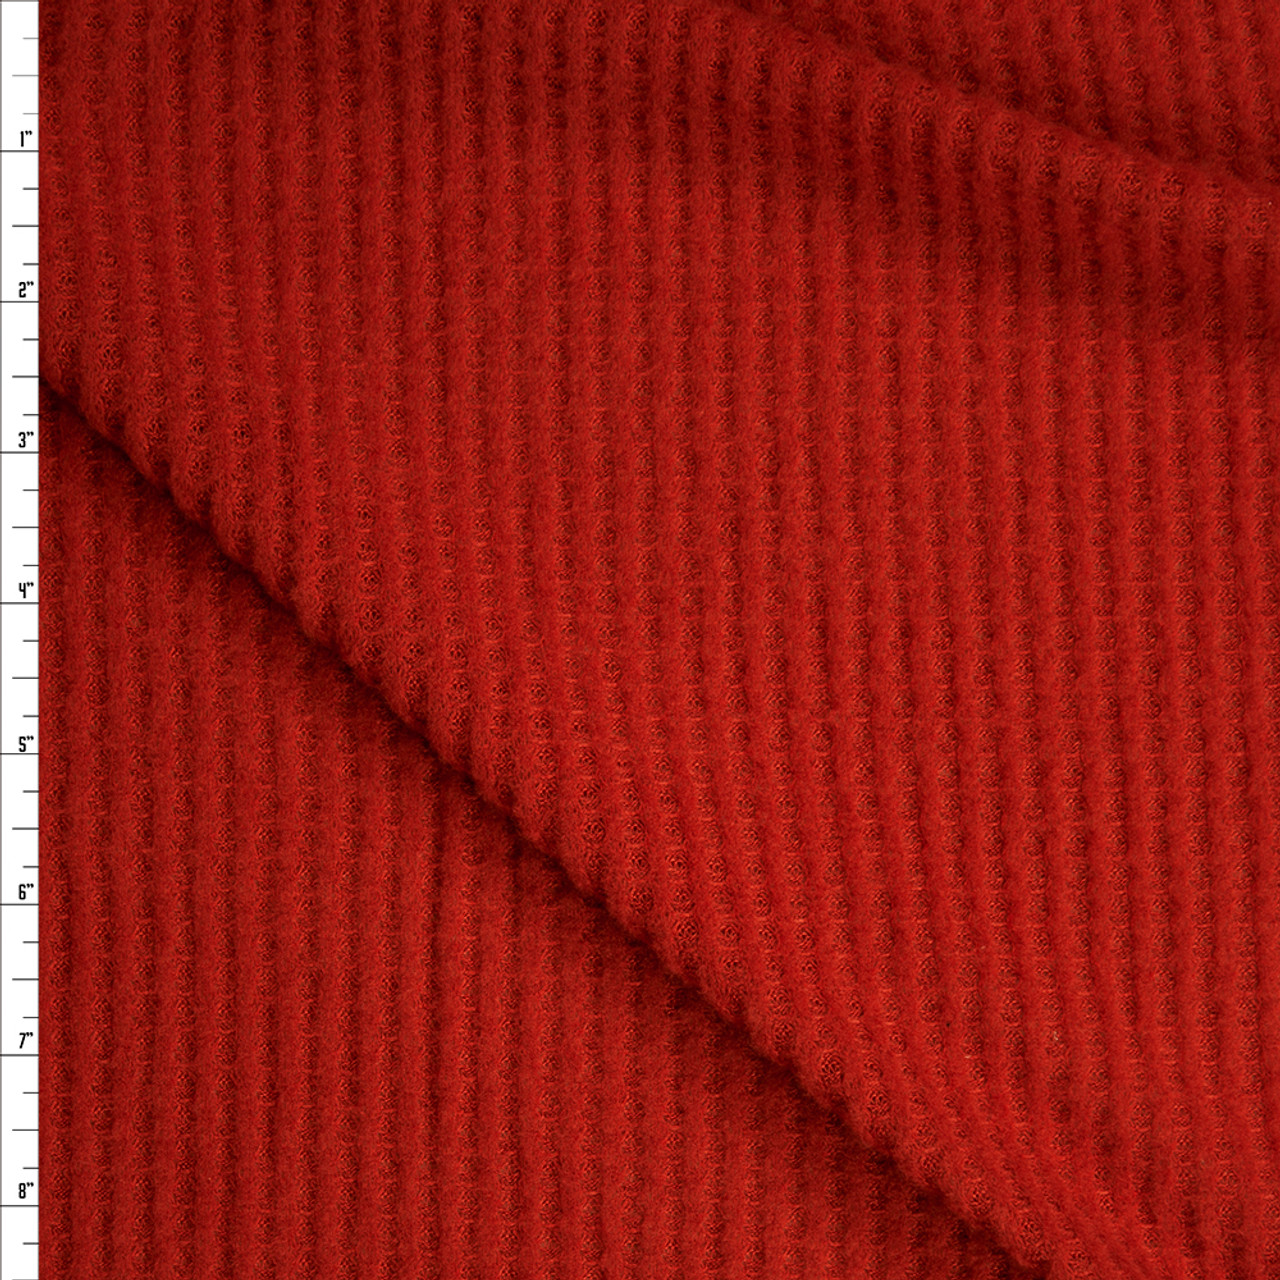 Cali Fabrics Rust Brushed Soft Waffle Sweater Knit Fabric by the Yard